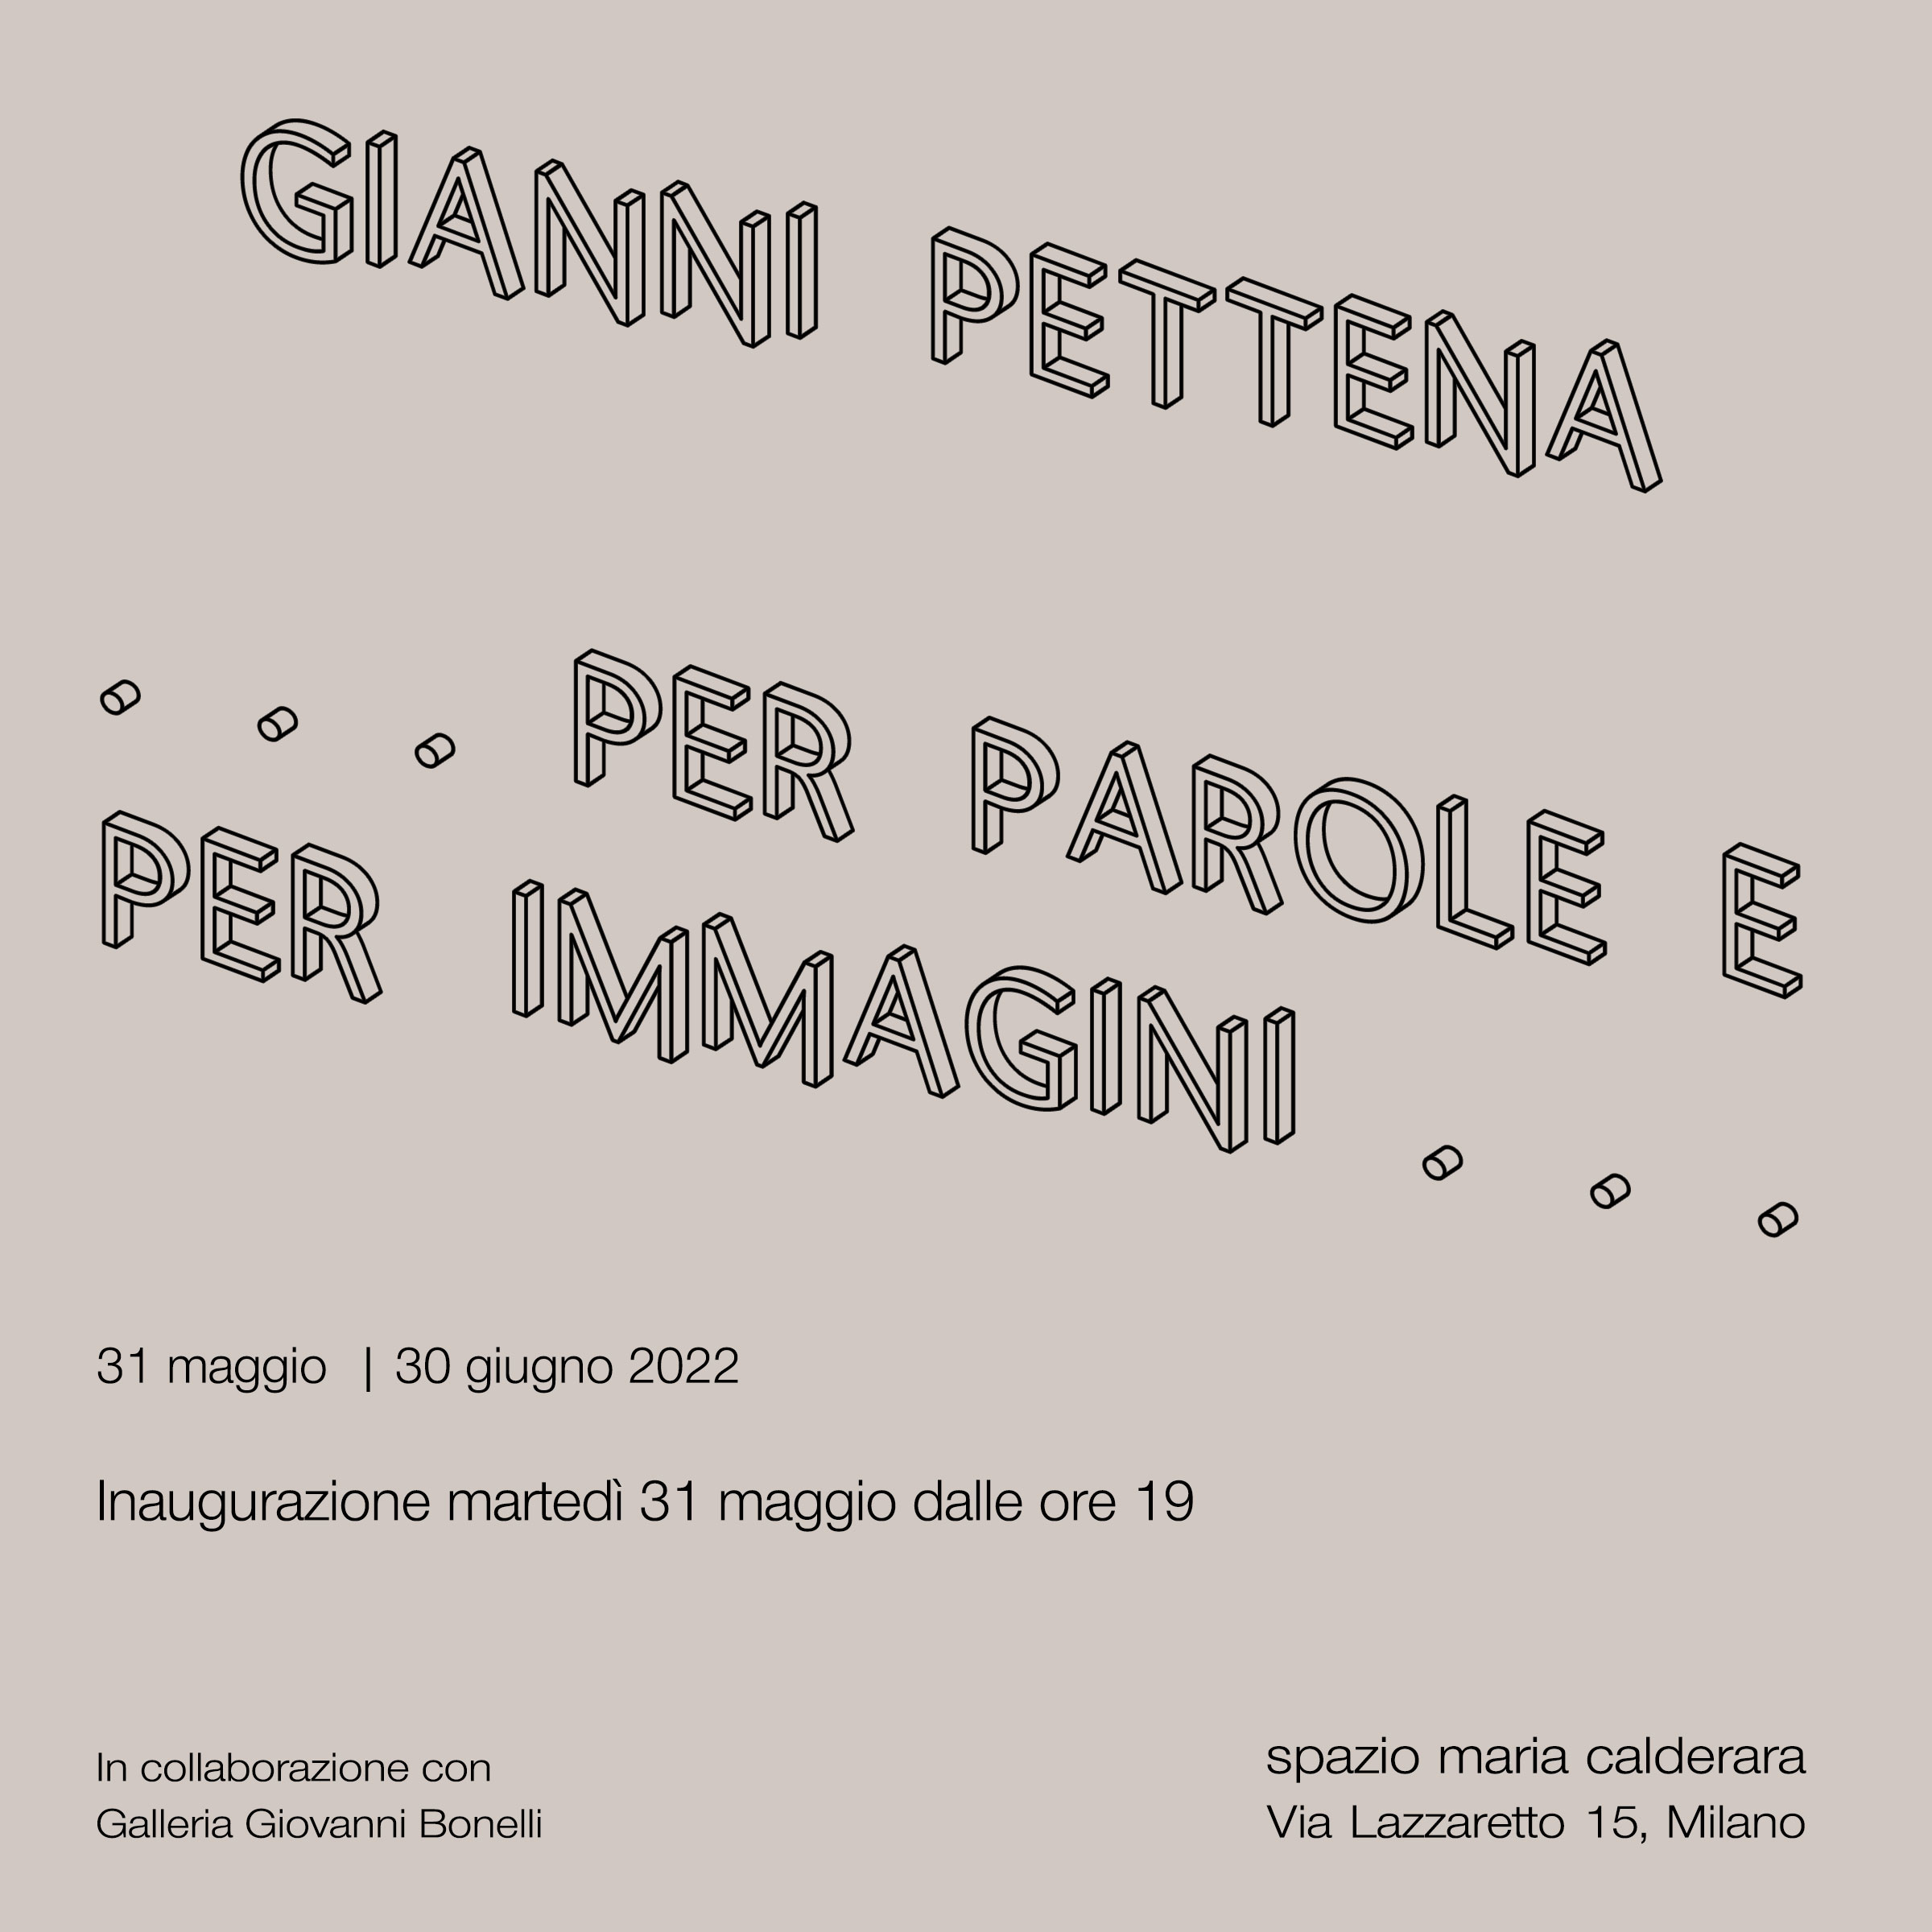 Gianni Pettena: …per parole e per immagini…